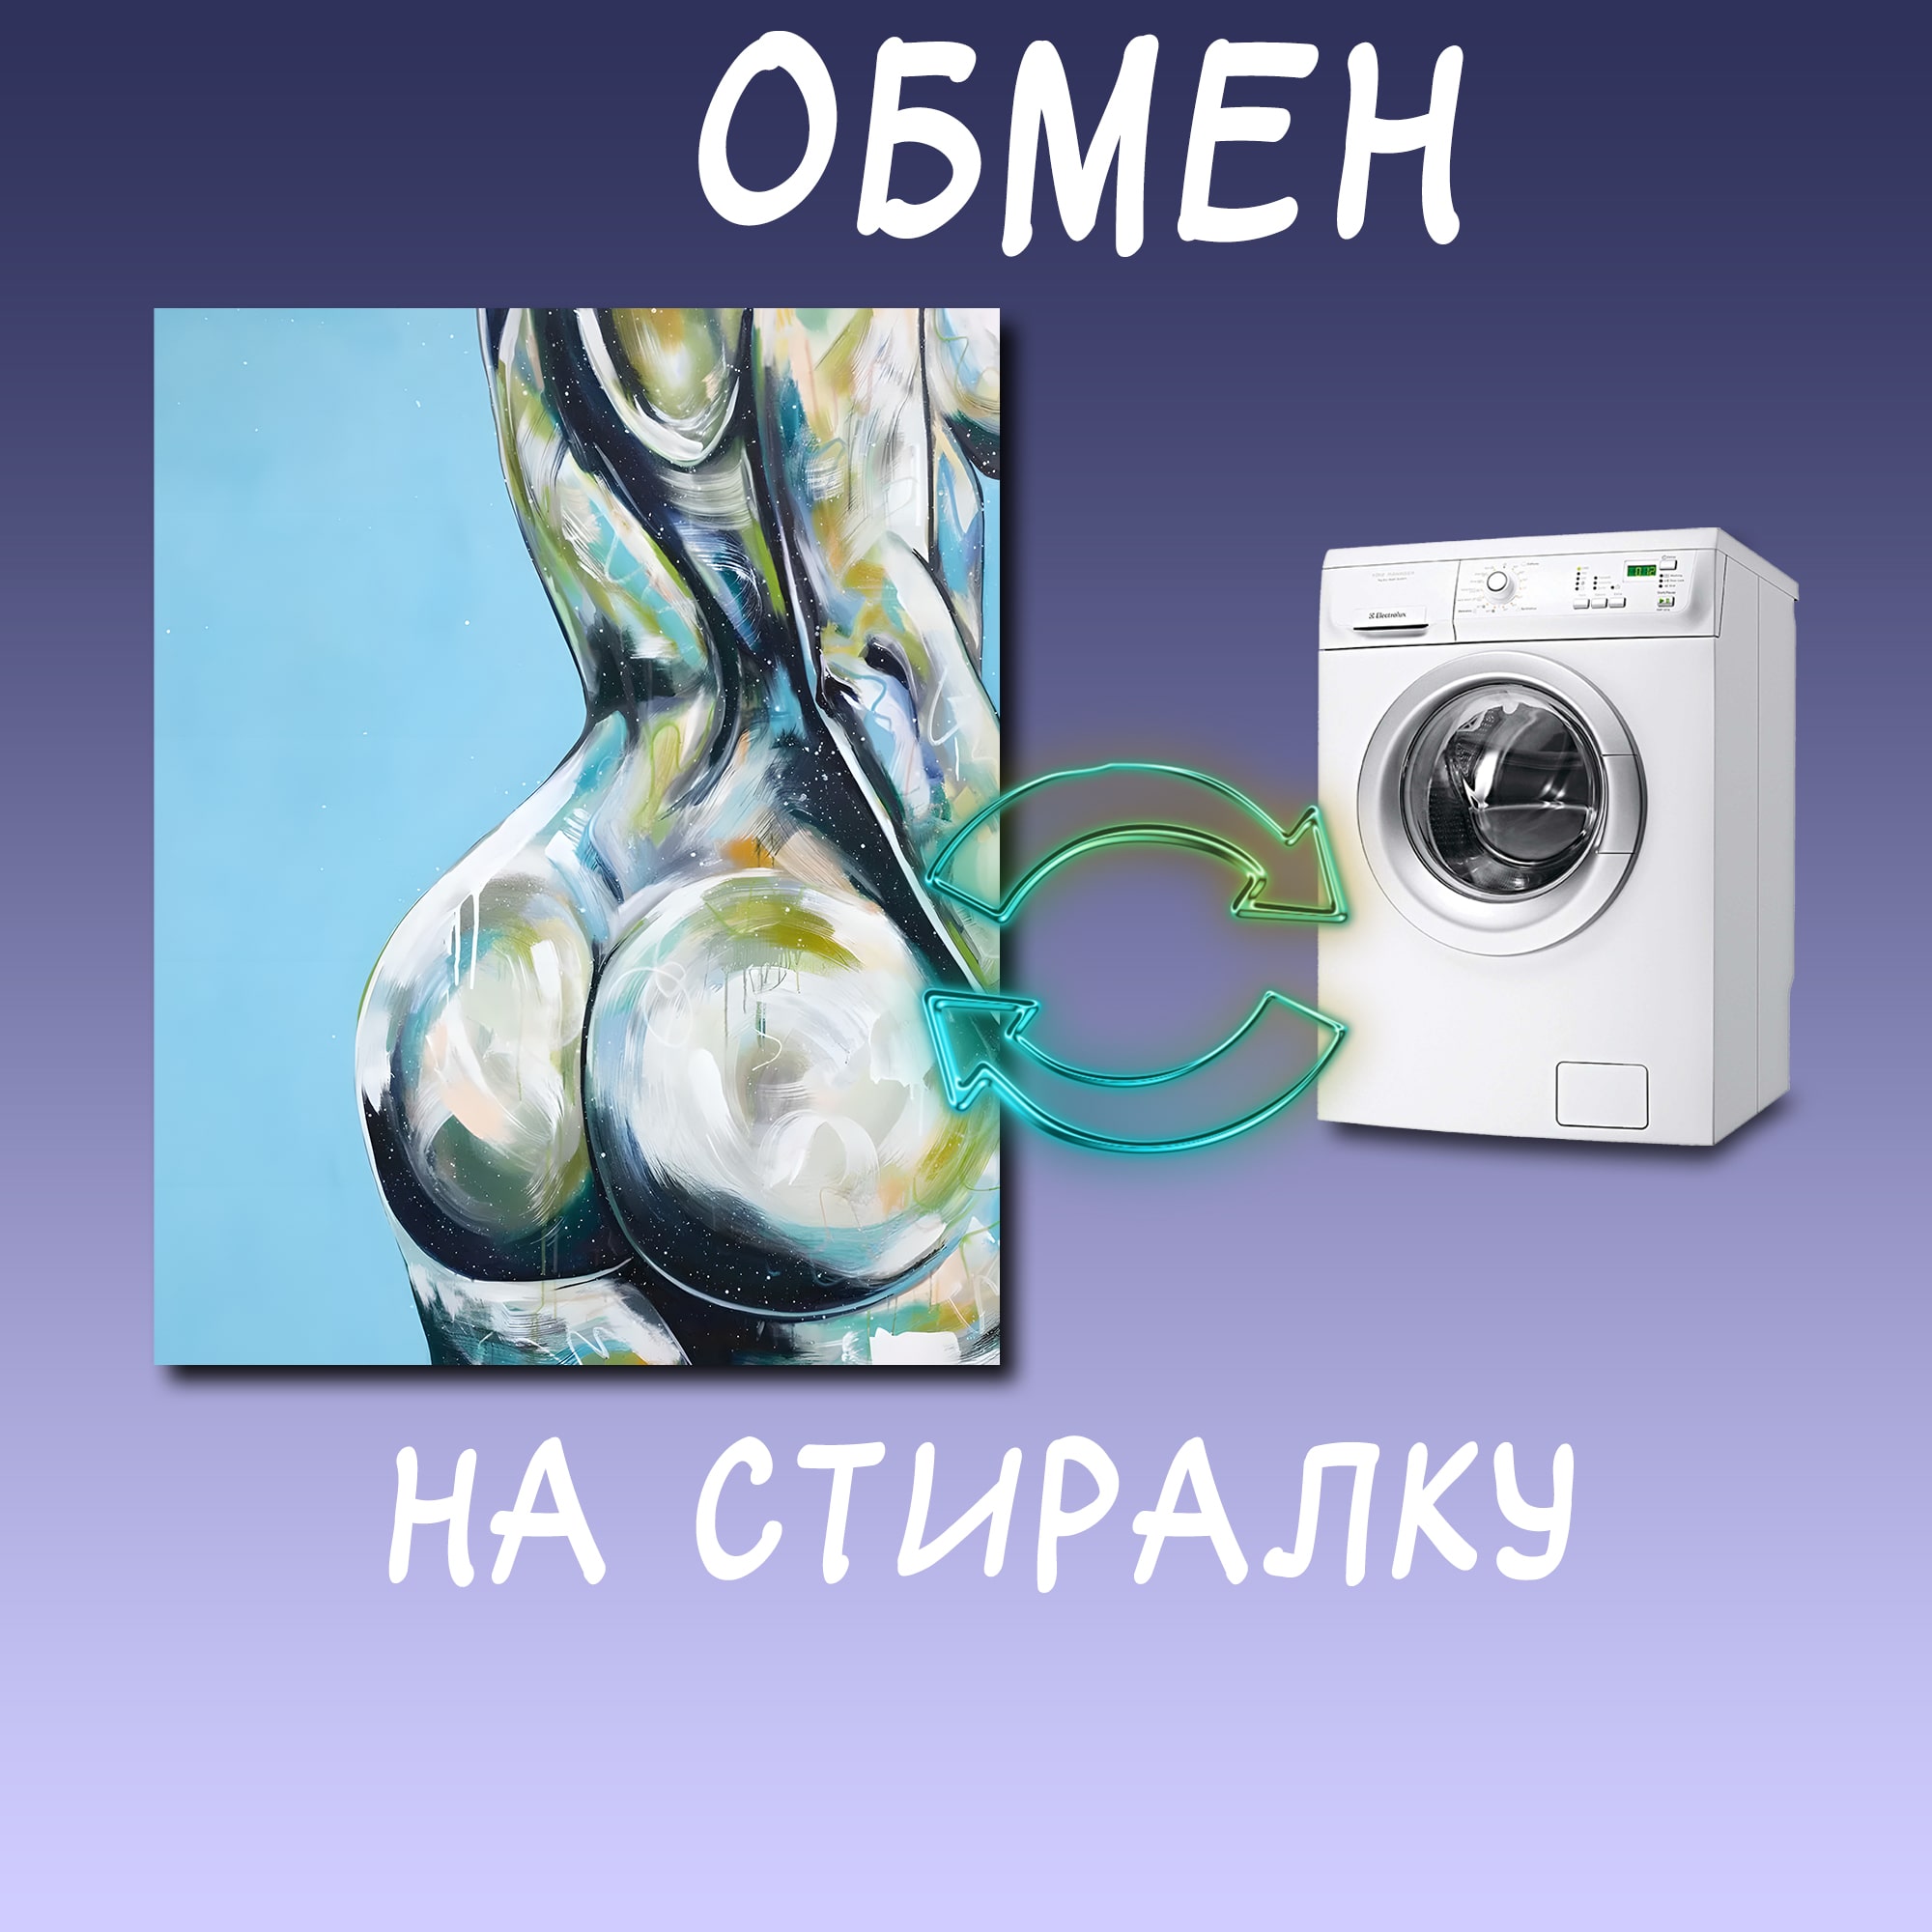 Скупка и обмен стиральных машин в Москве и в Московской области